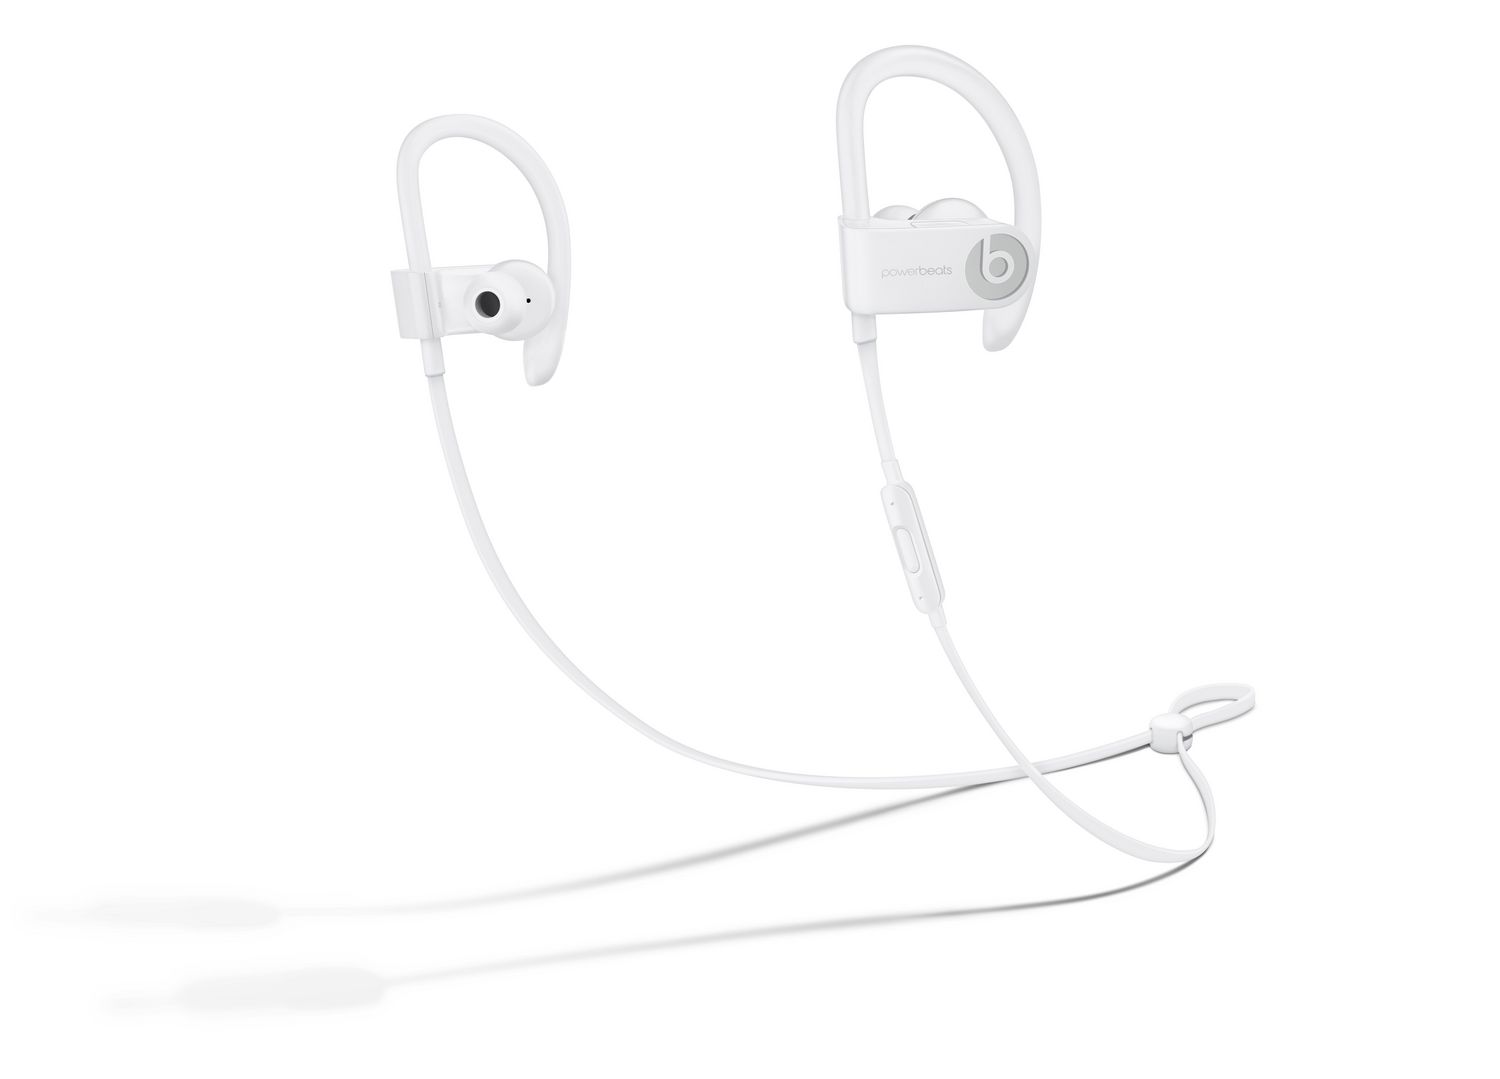 beats wireless earbuds powerbeats 3